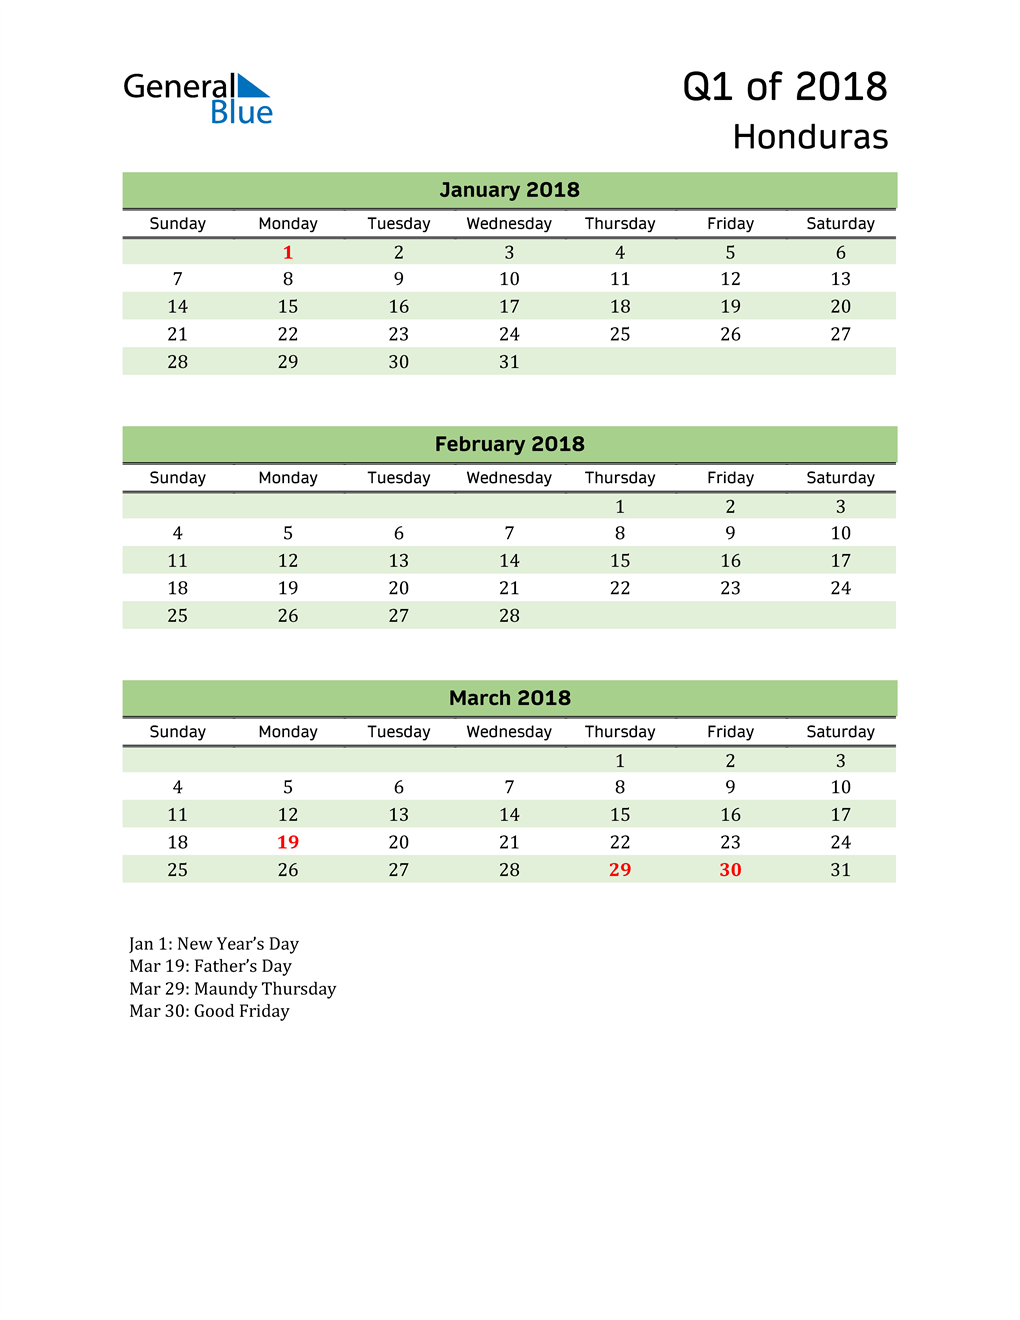  Quarterly Calendar 2018 with Honduras Holidays 